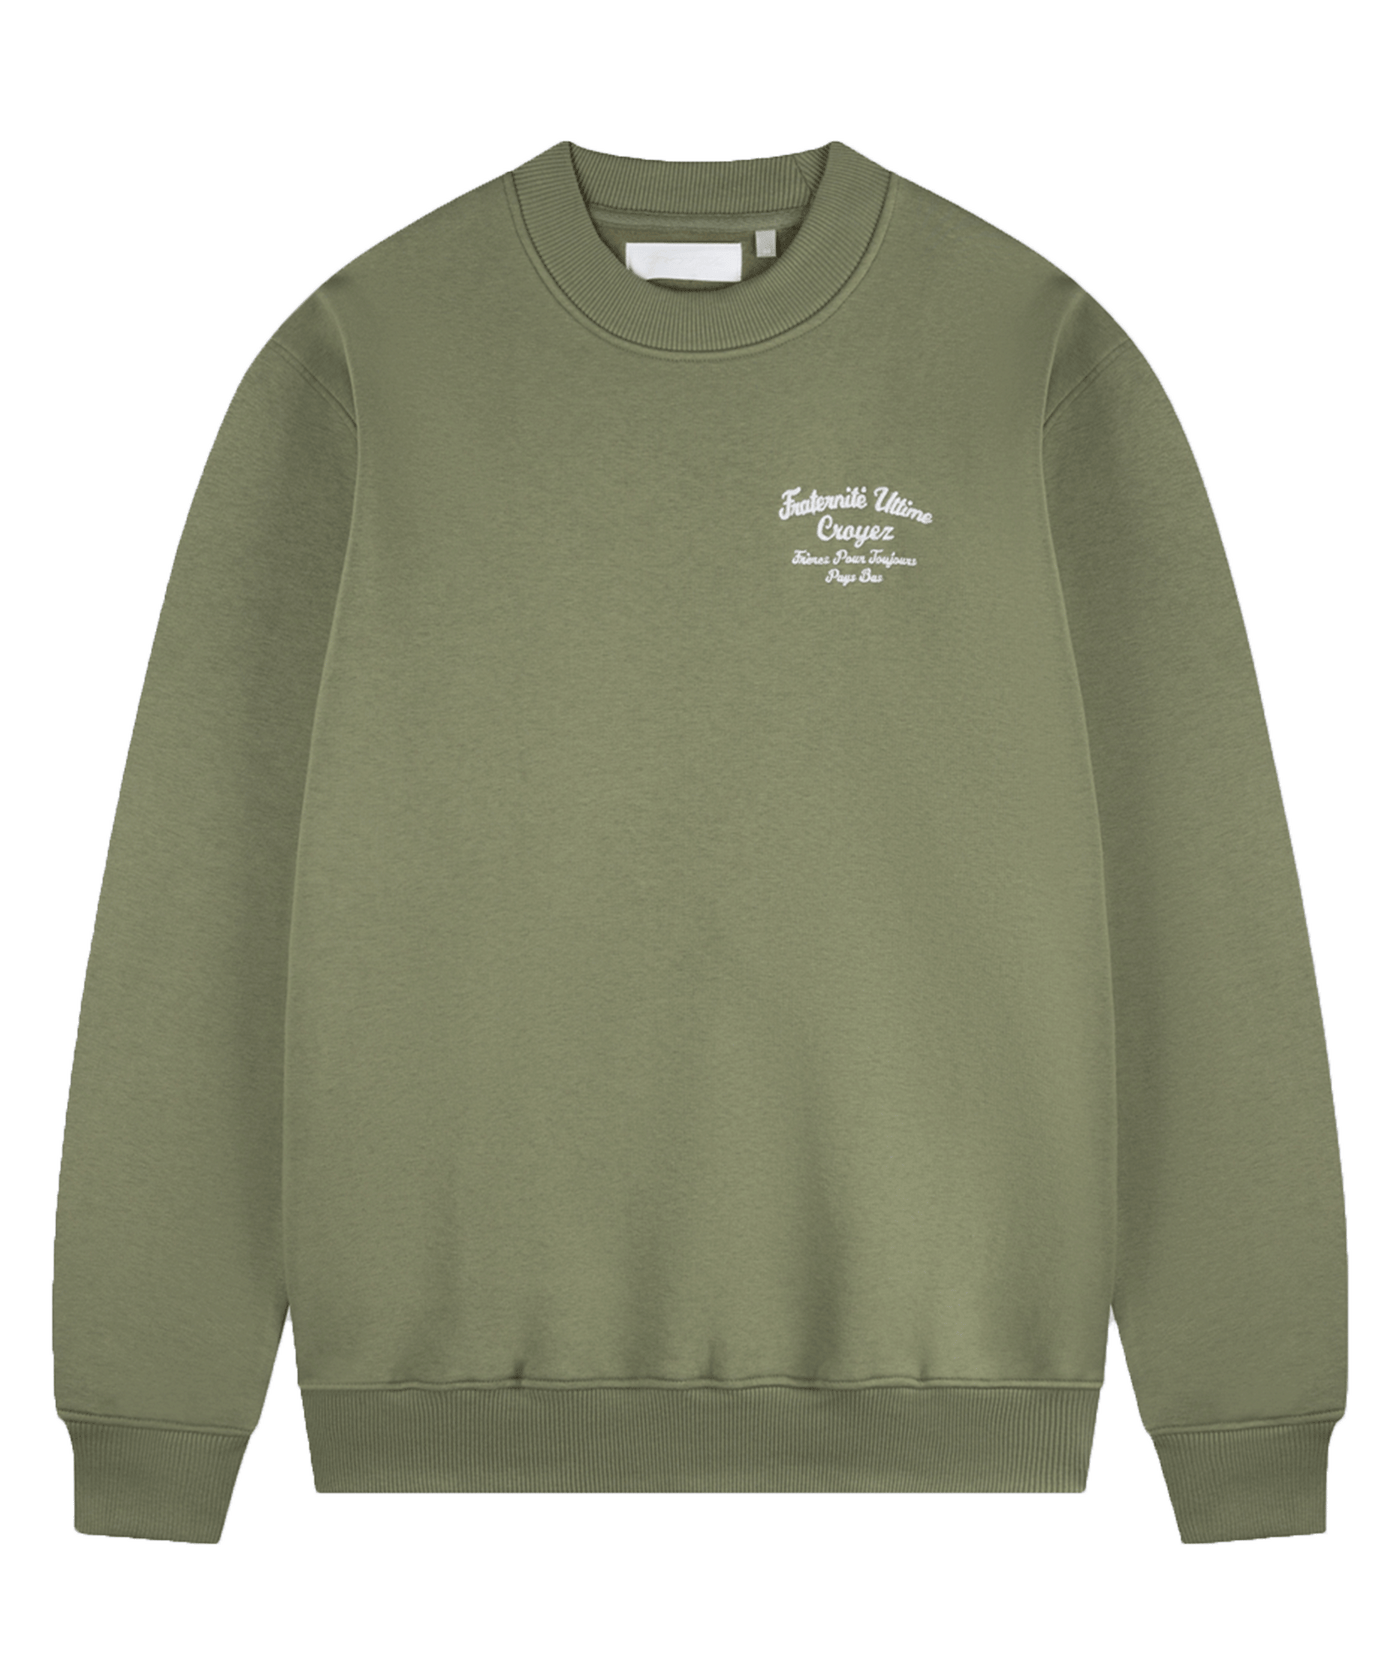 CROYEZ - Fraternite - Sweater - Washed Olive